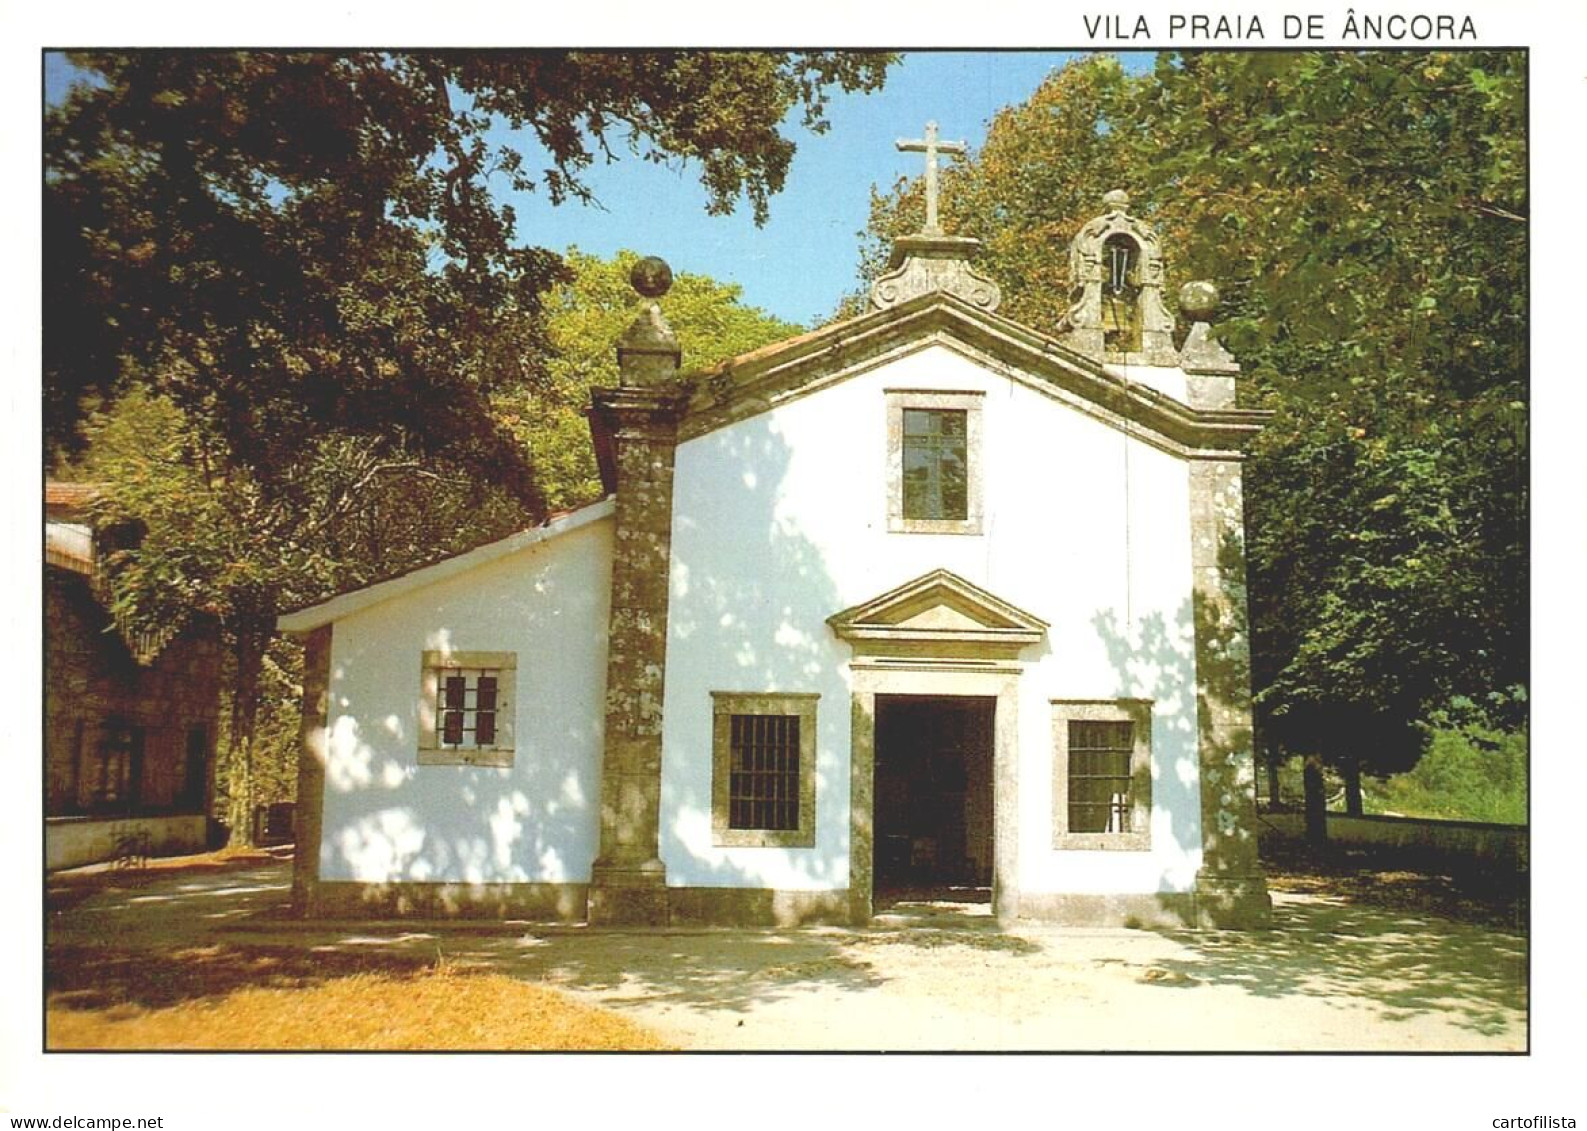 VILA PRAIA DE ANCORA, Caminha - Capela De S. Sebastião  (2 Scans) - Viana Do Castelo